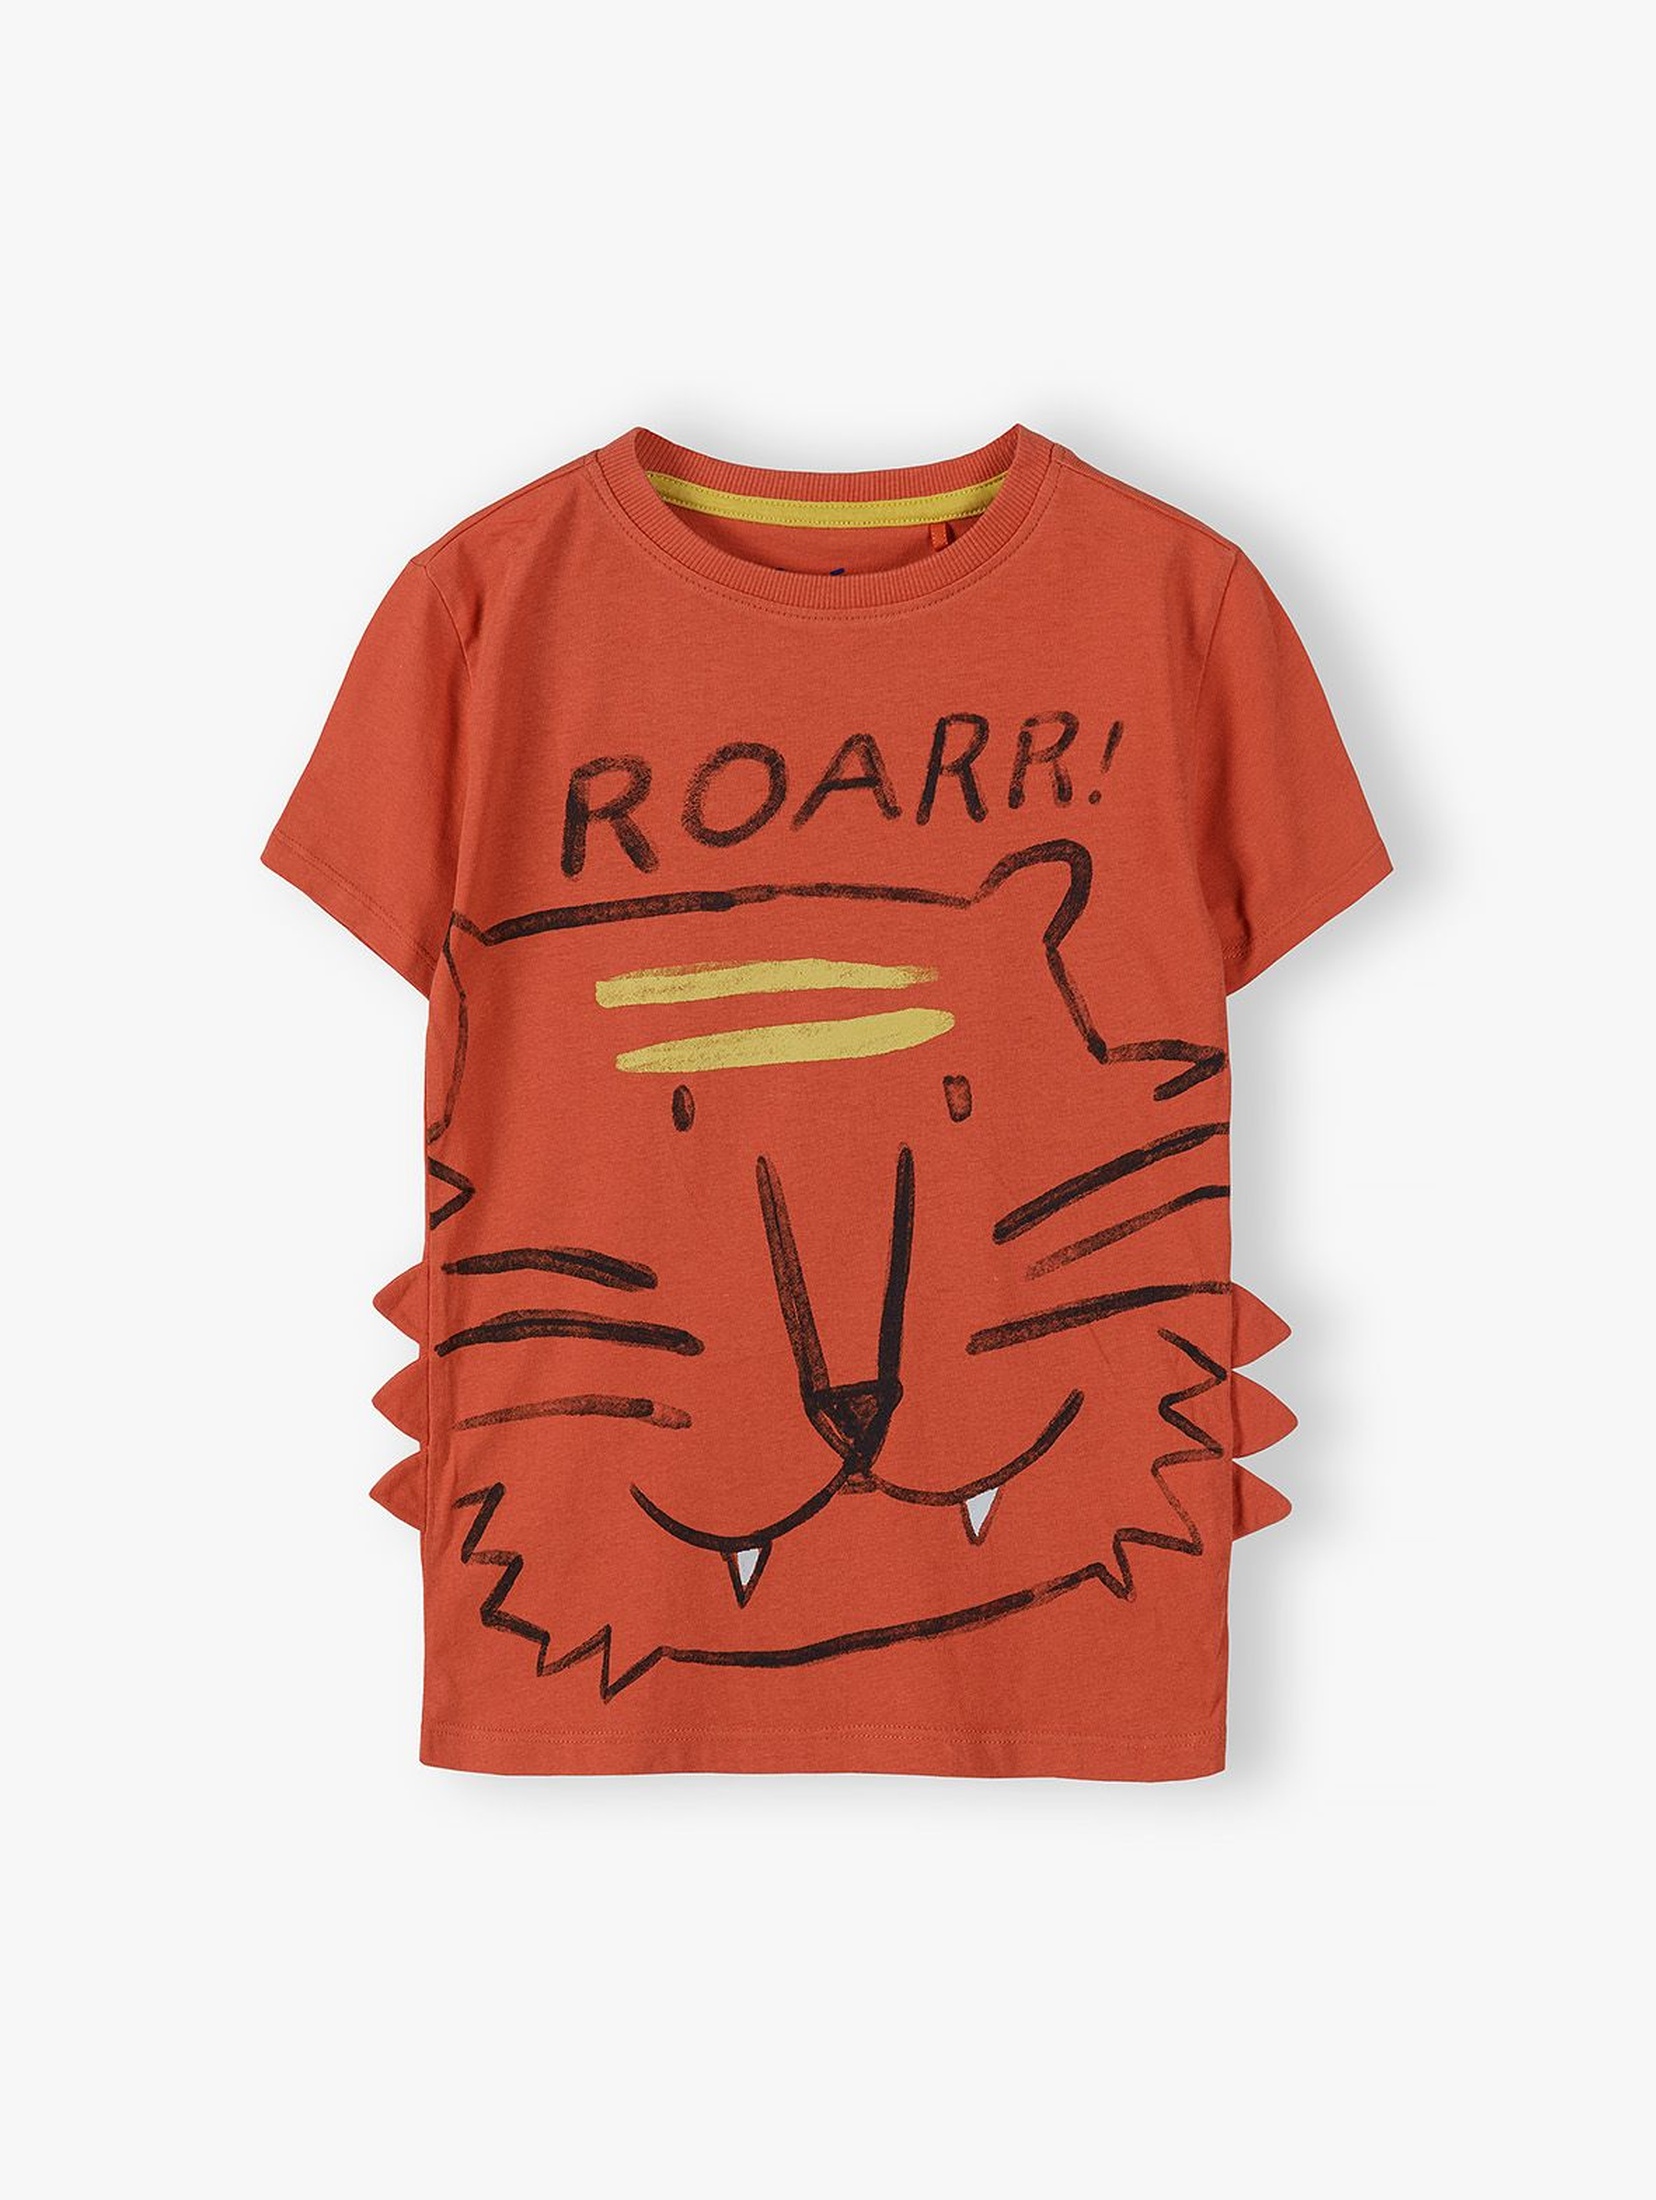 Dzianinowy T-shirt dla chłopca z tygrysem